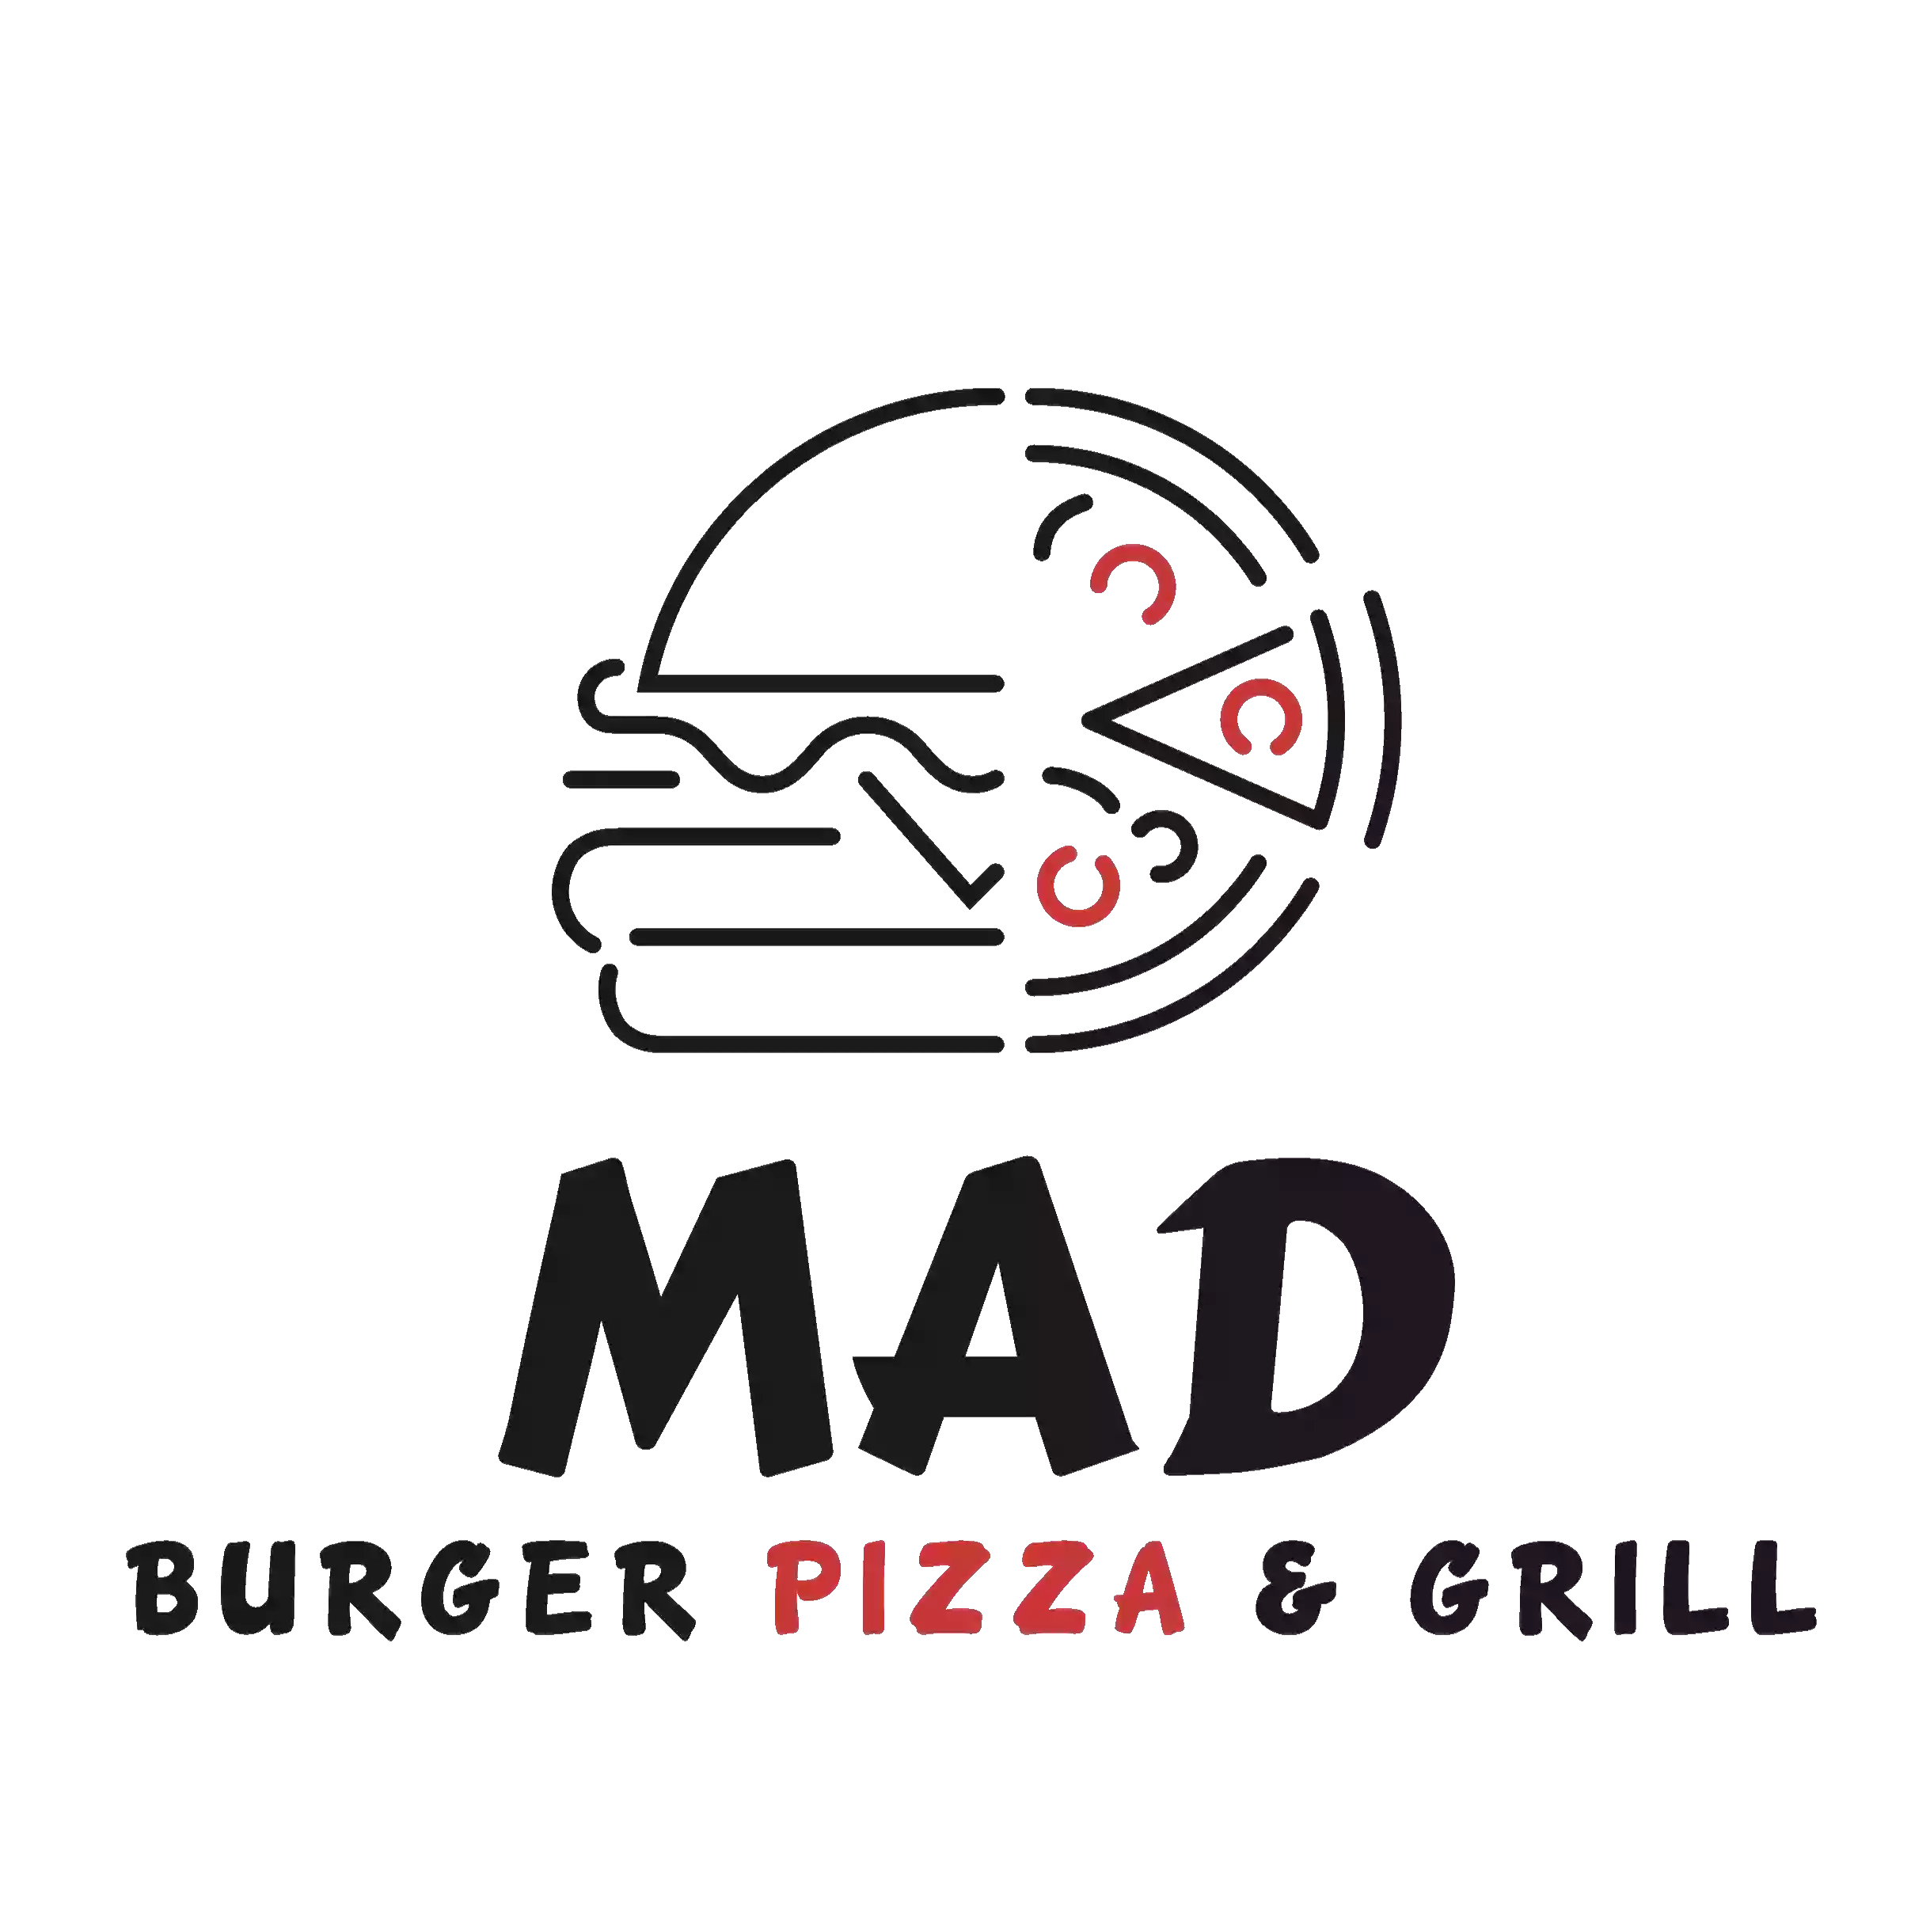 MAD Burger Pizza & Grill PESCHIERA BORROMEO